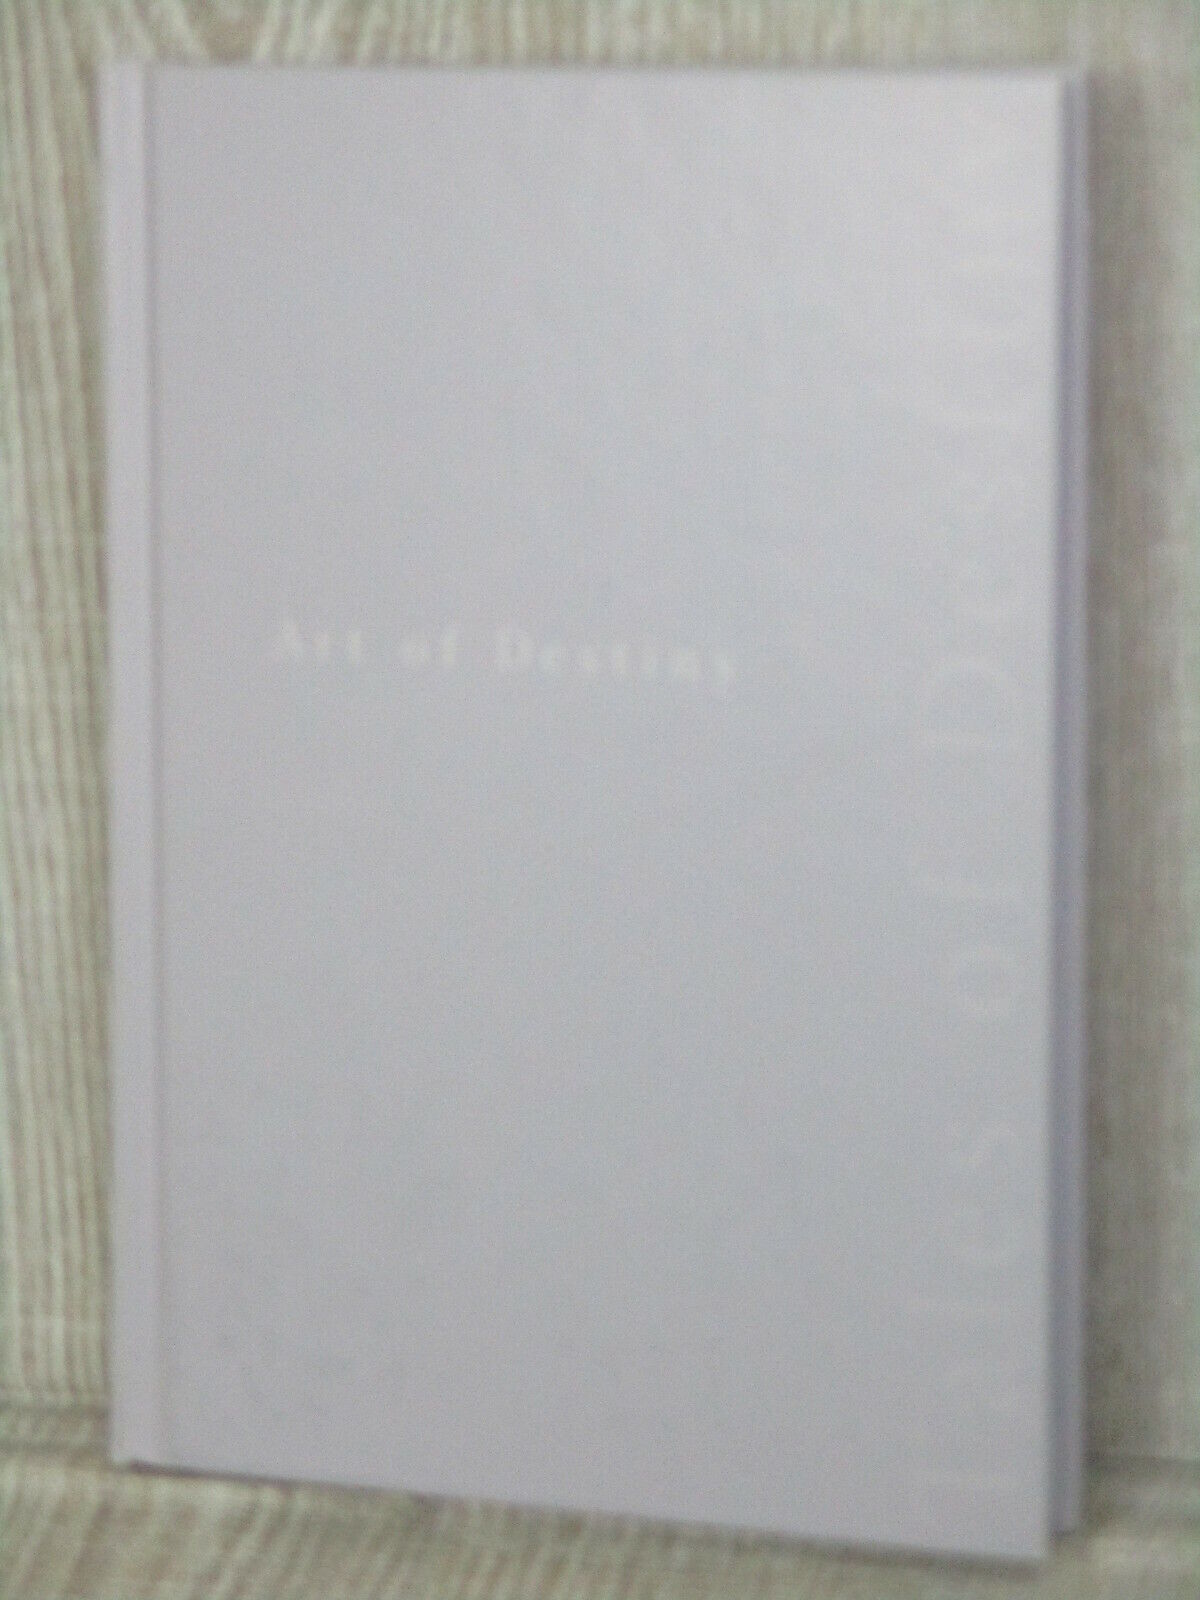 TALES OF DESTINY Art Works PS2 2008 Japan Ltd Fan Book Mutsumi Inomata